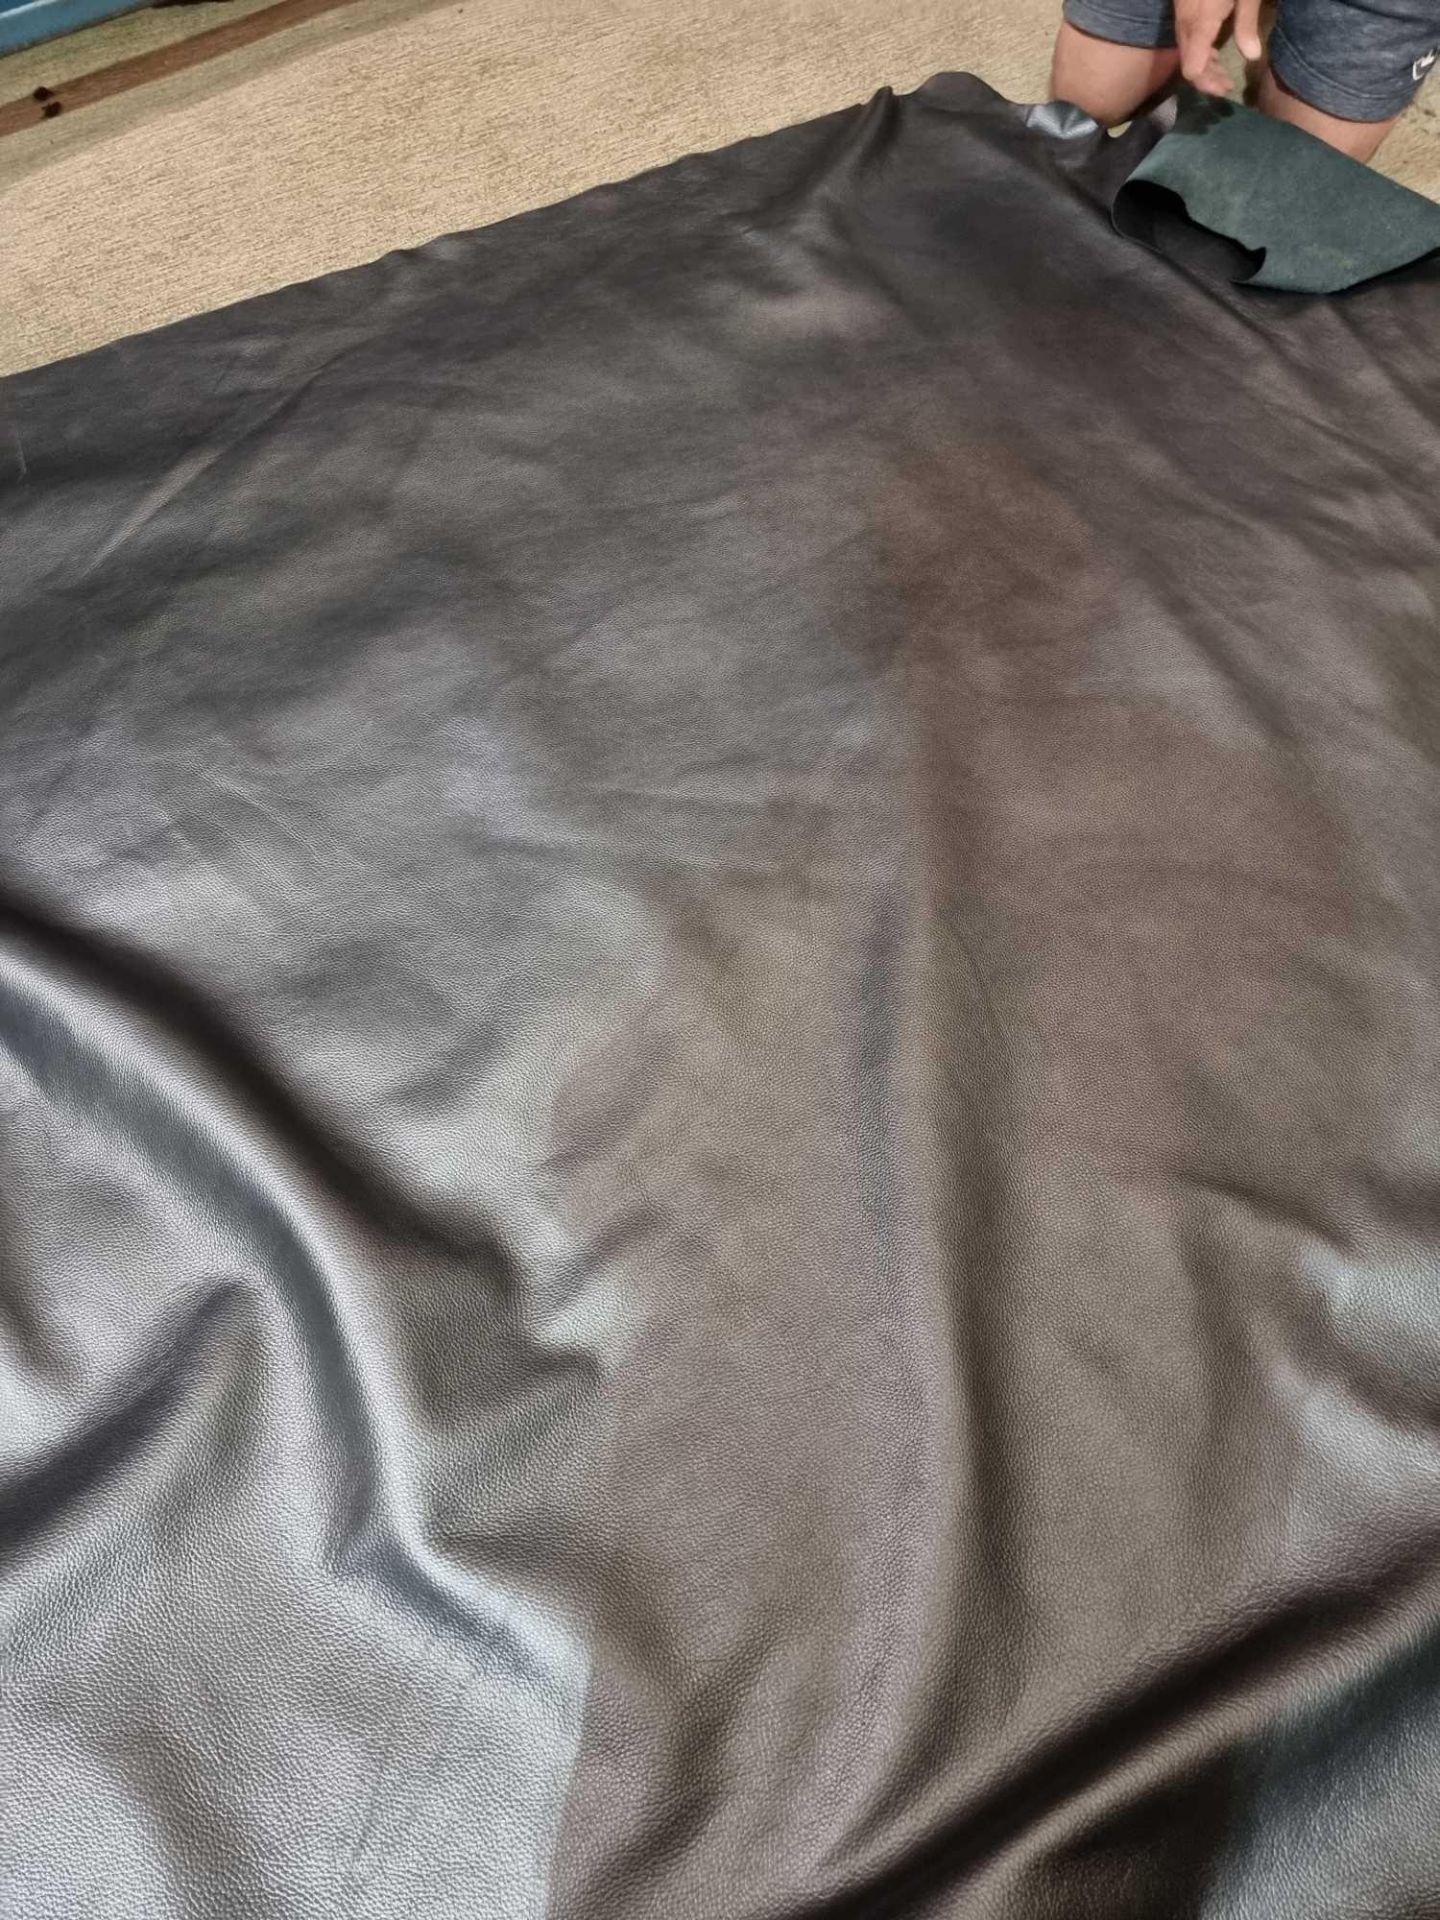 Duresta Midnight Silver Leather Hide approximately 4 37M2 2 3 x 1 9cm ( Hide No,224) - Bild 3 aus 3